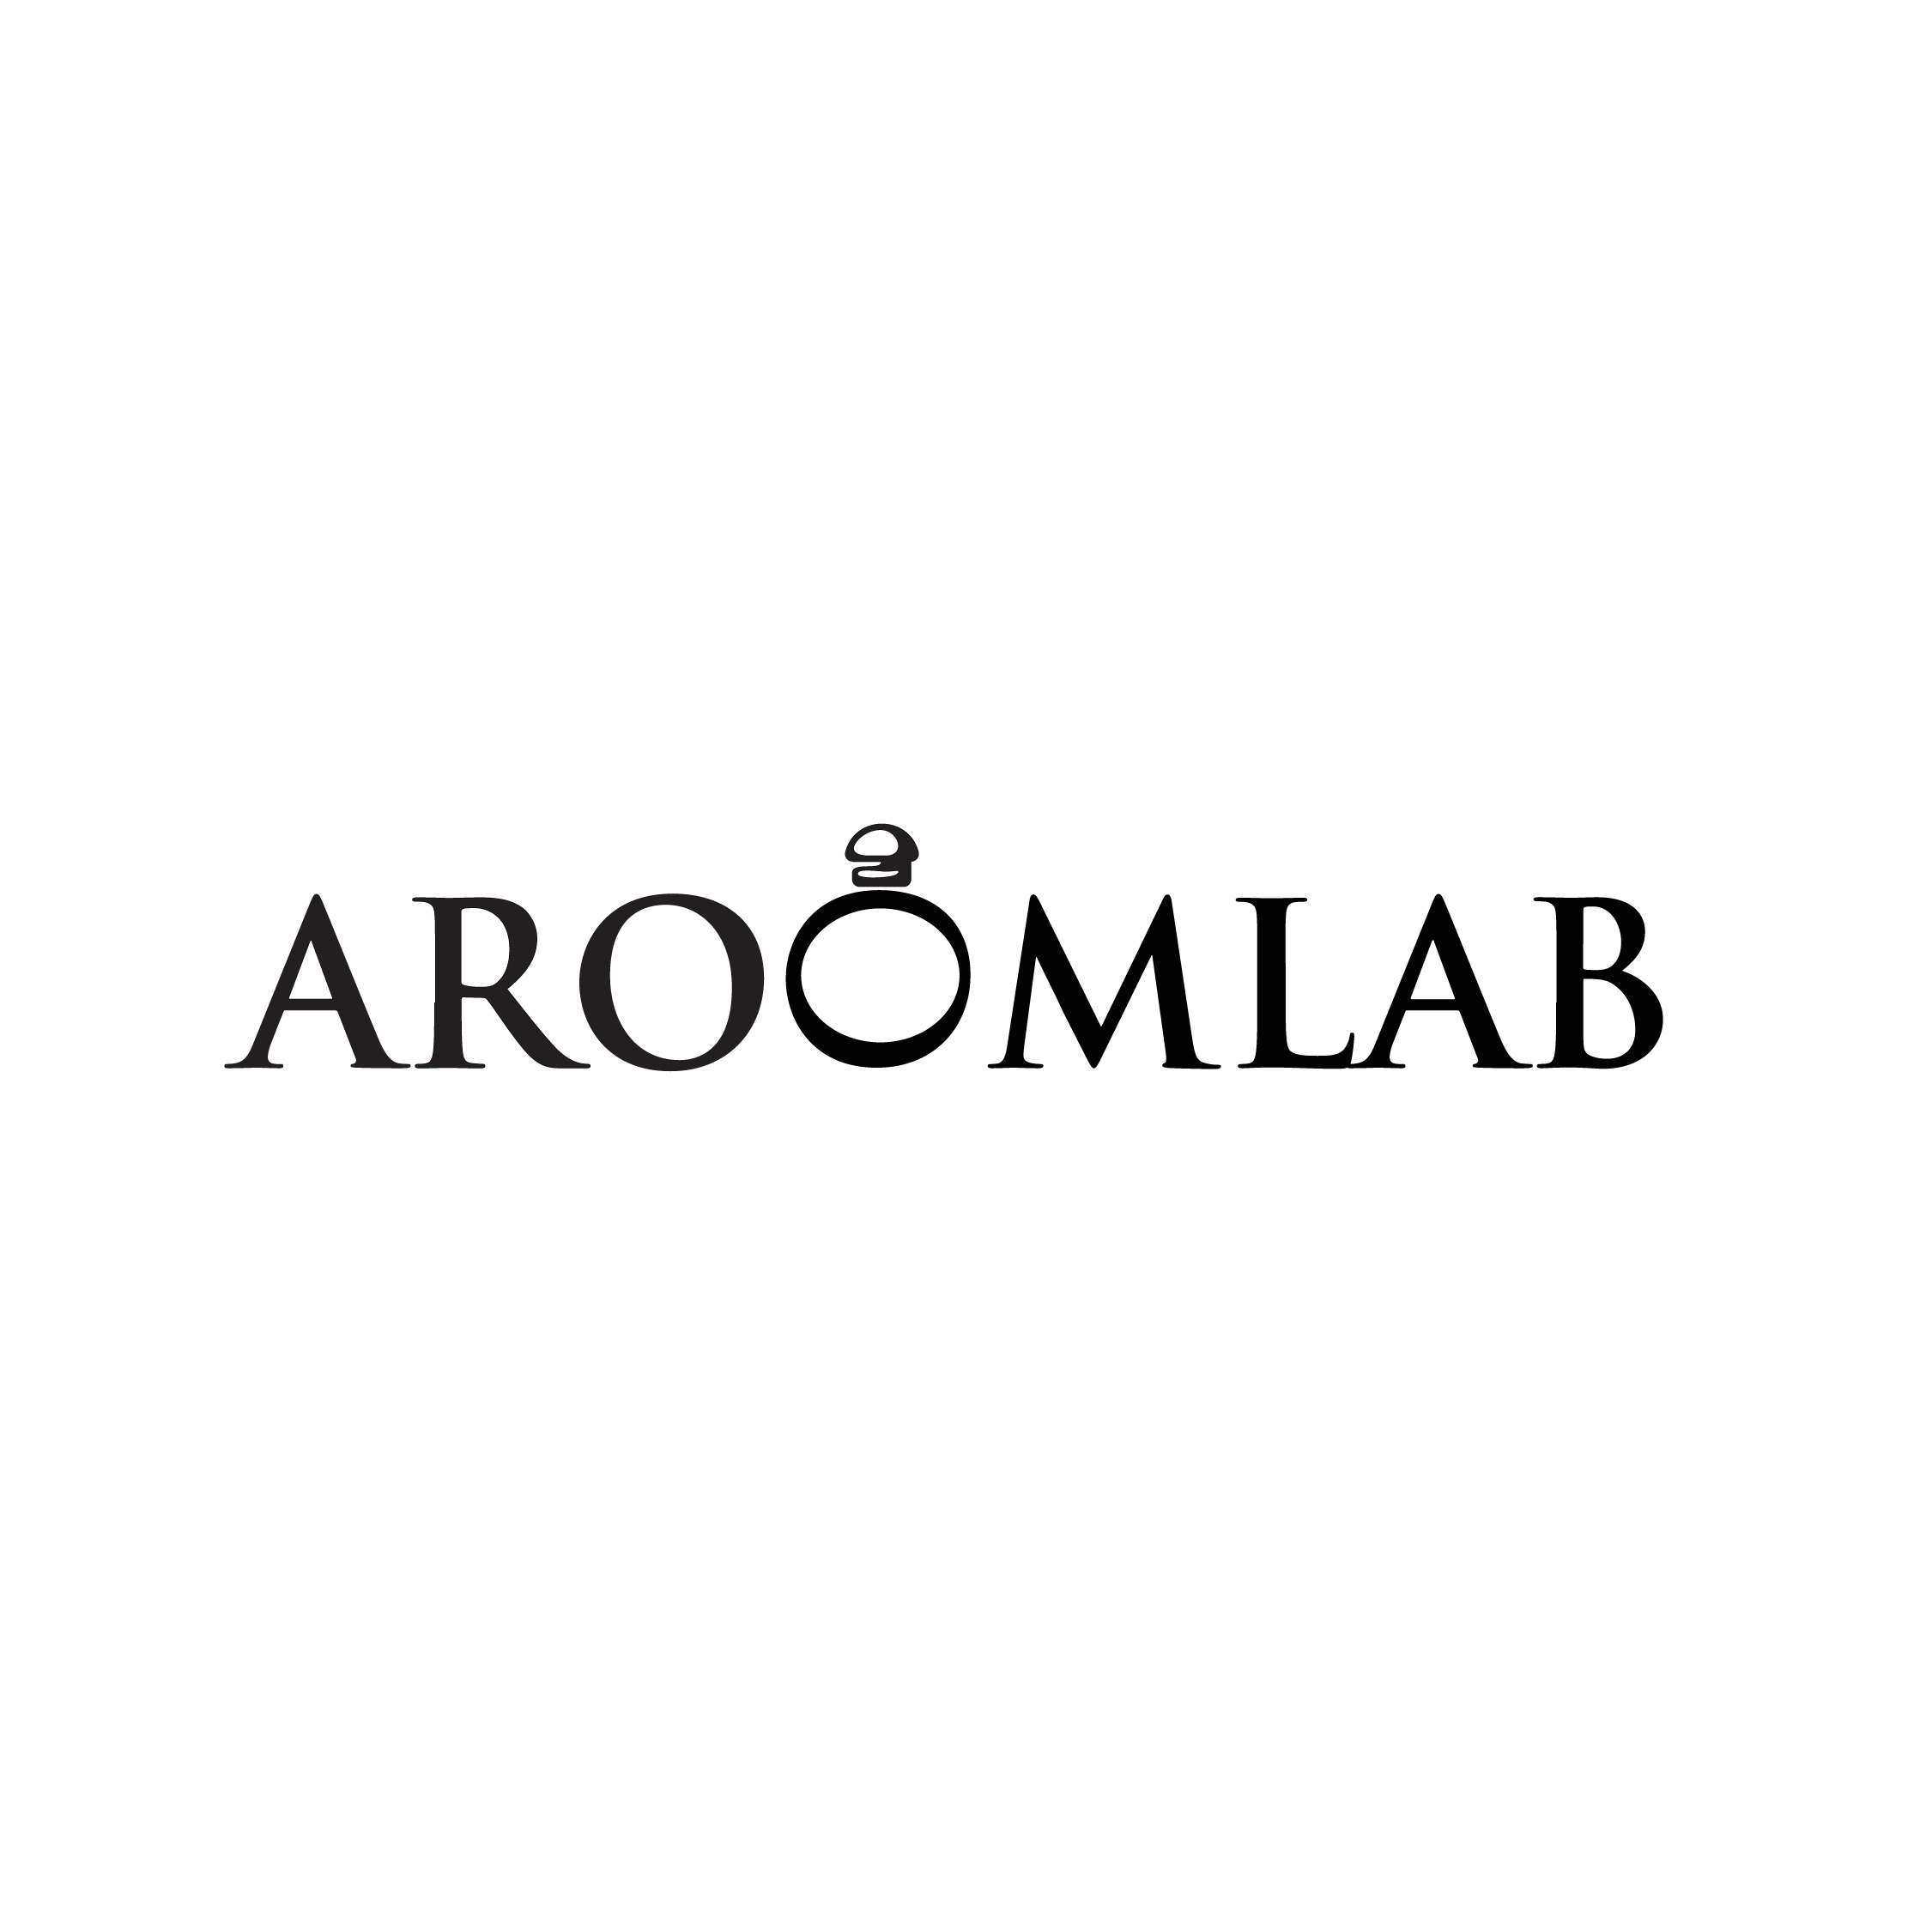 Aroomlab